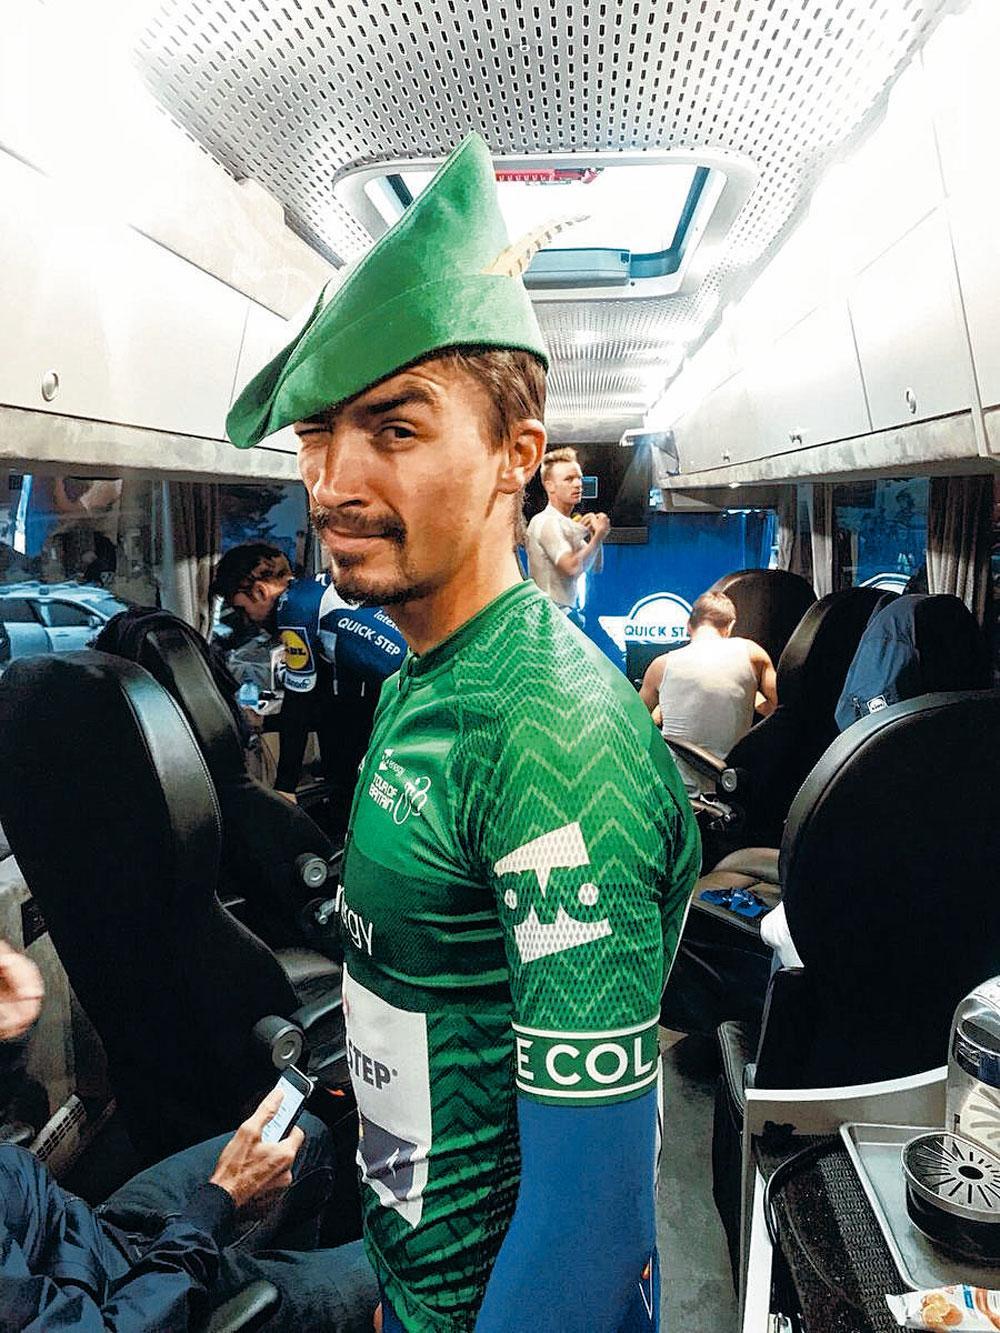 De koersende acteur Julian Alaphilippe zette tijdens de Tour of Britain een Robin Hoodpetje op.